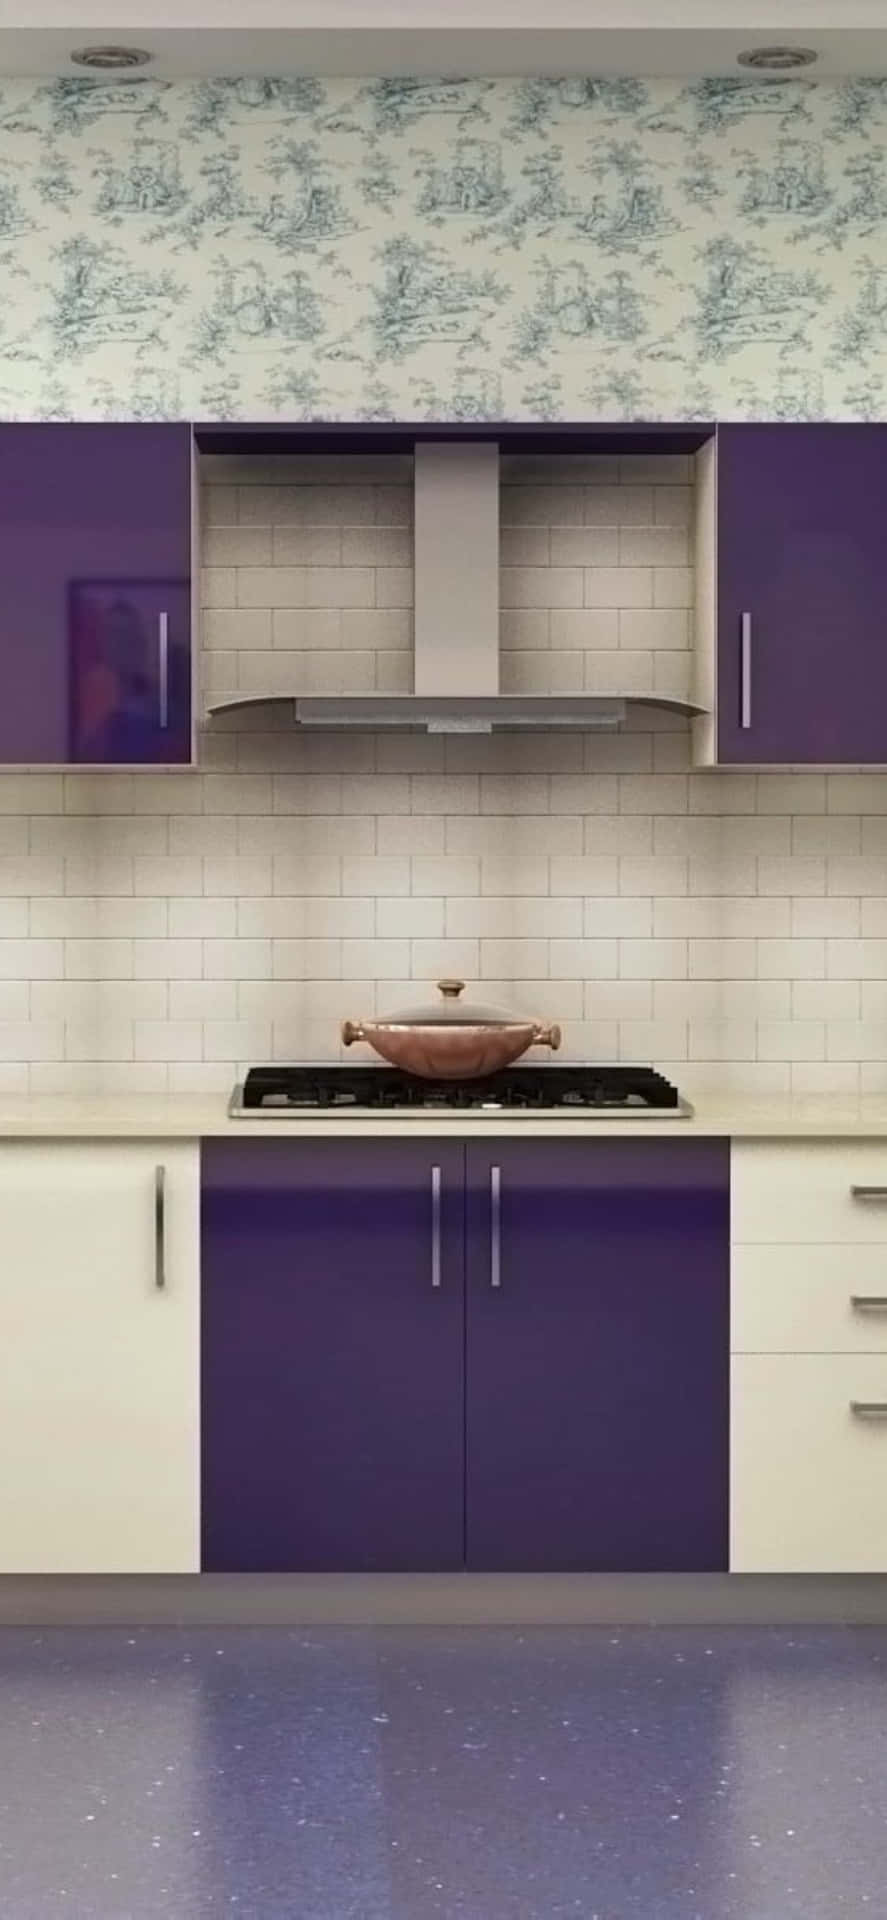 Purple Design Iphone Xs Kitchen Background